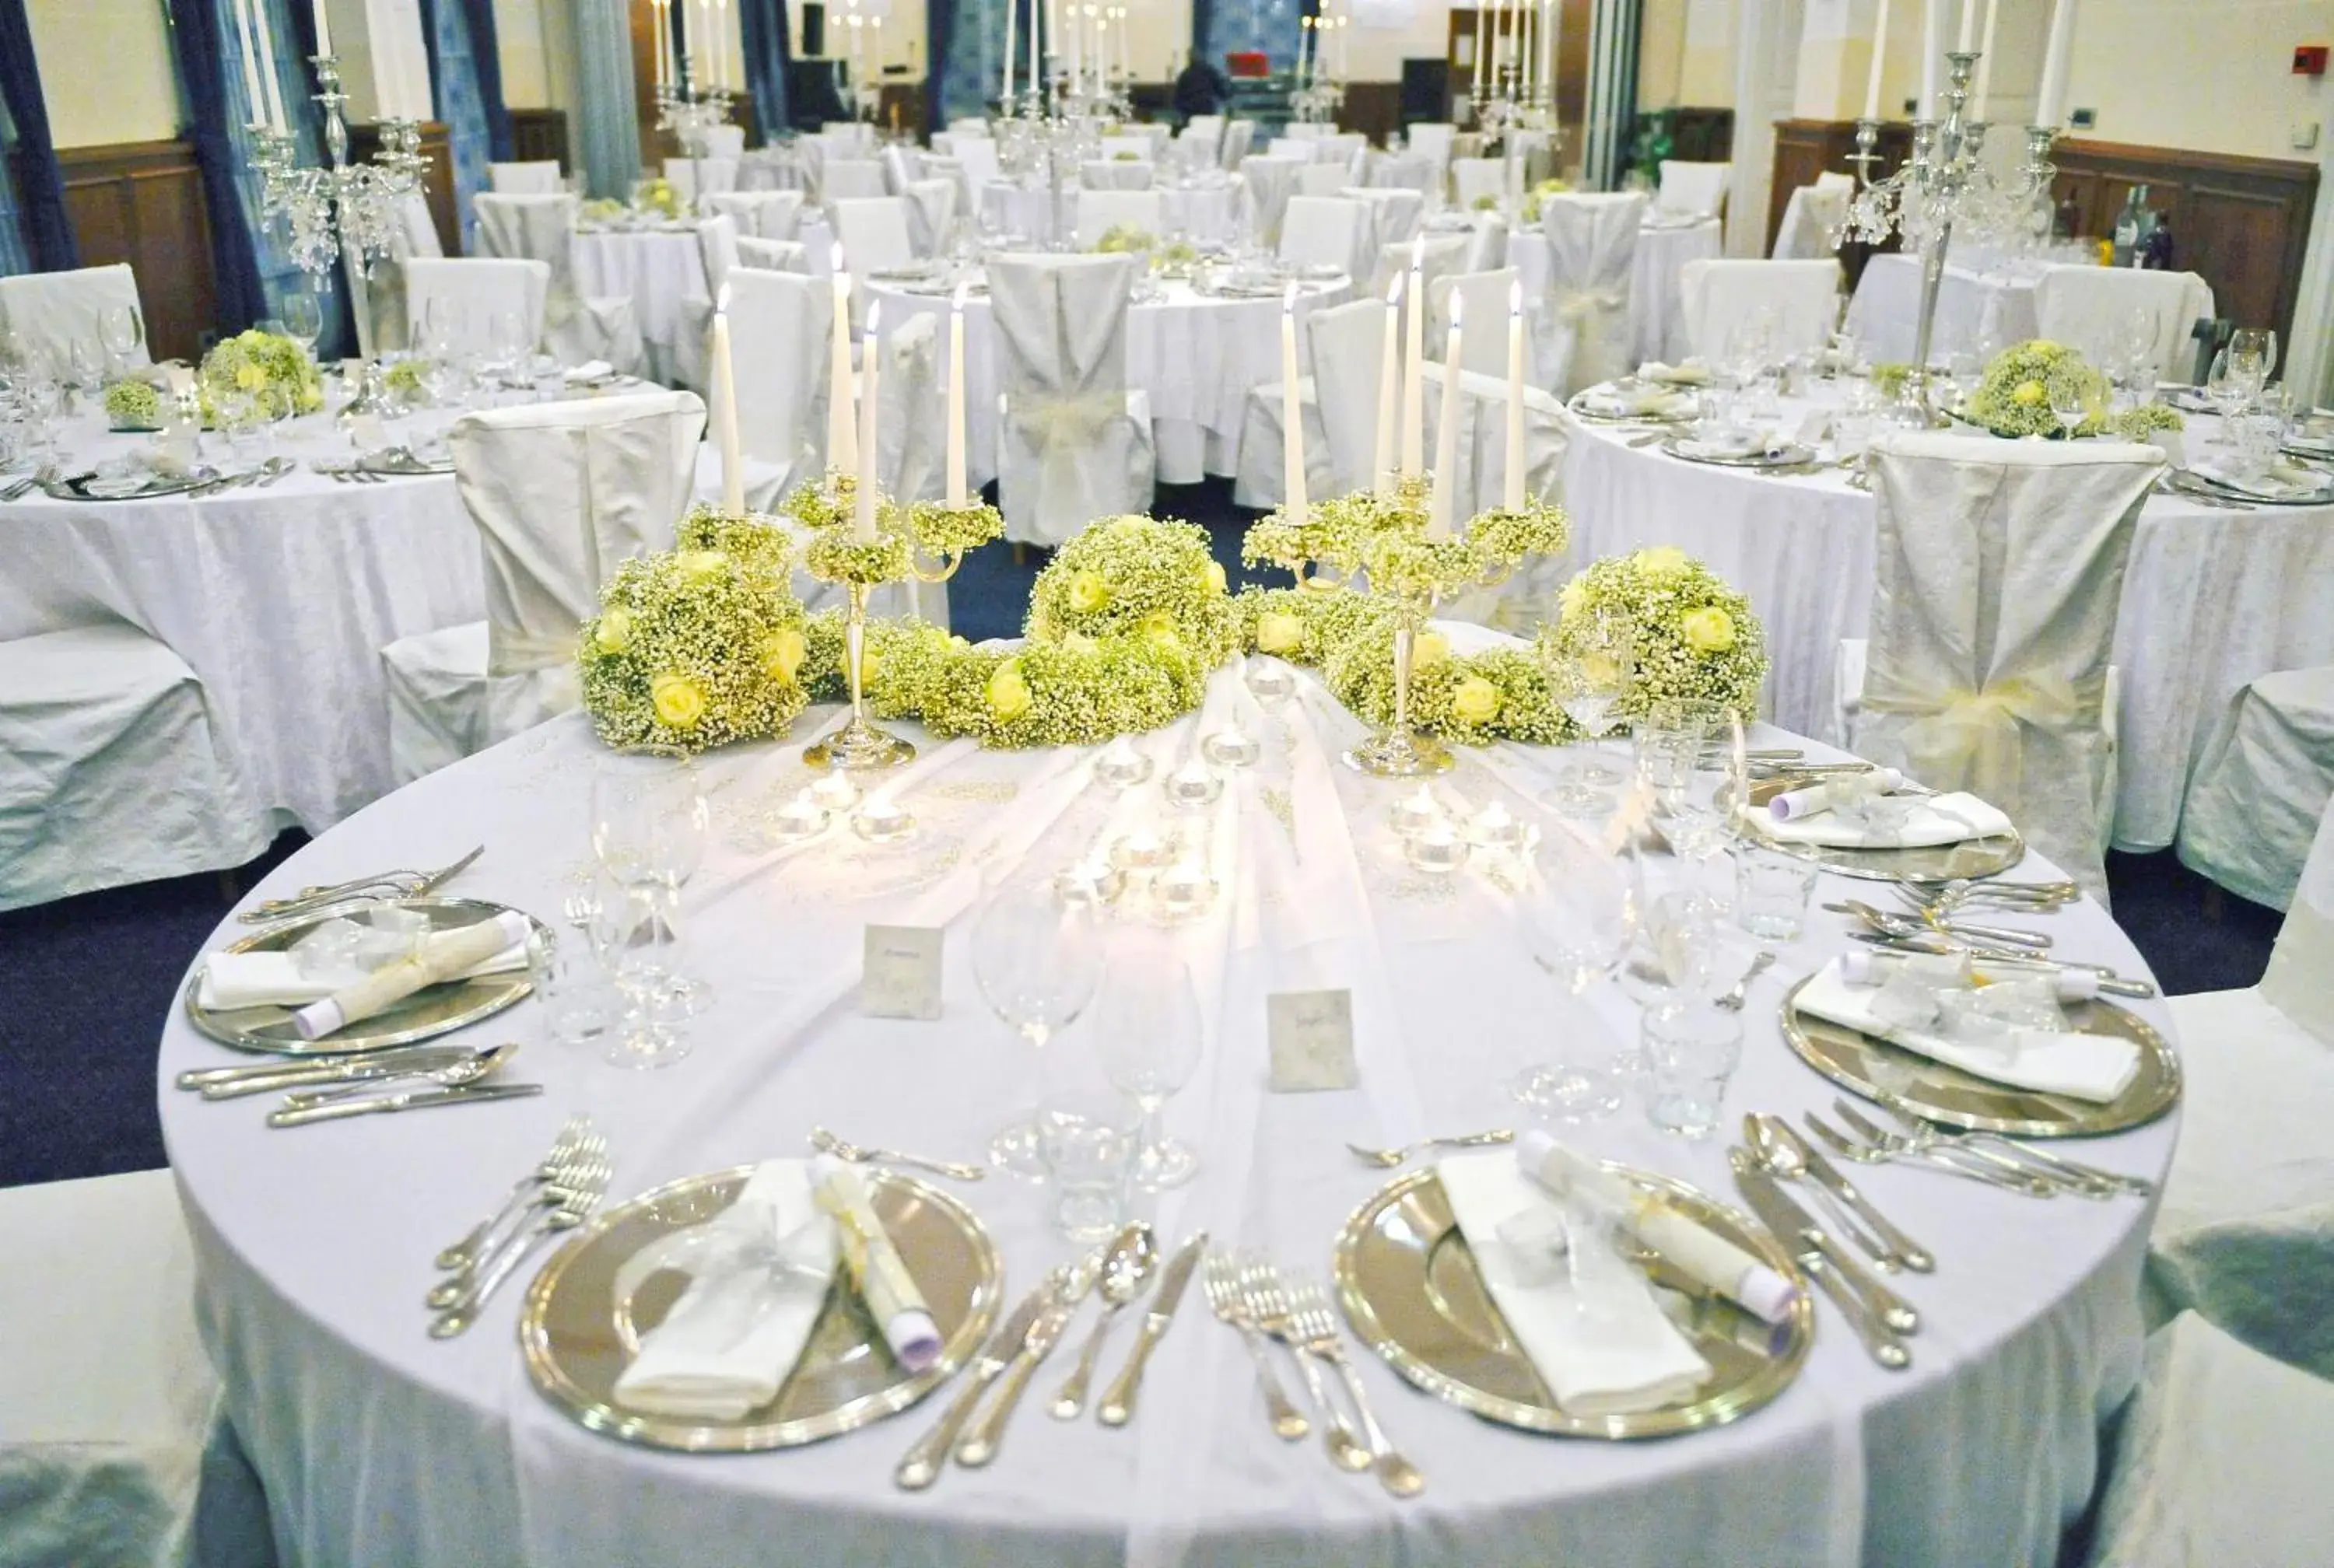 Banquet/Function facilities, Banquet Facilities in BRISTOL Hotel Opatija